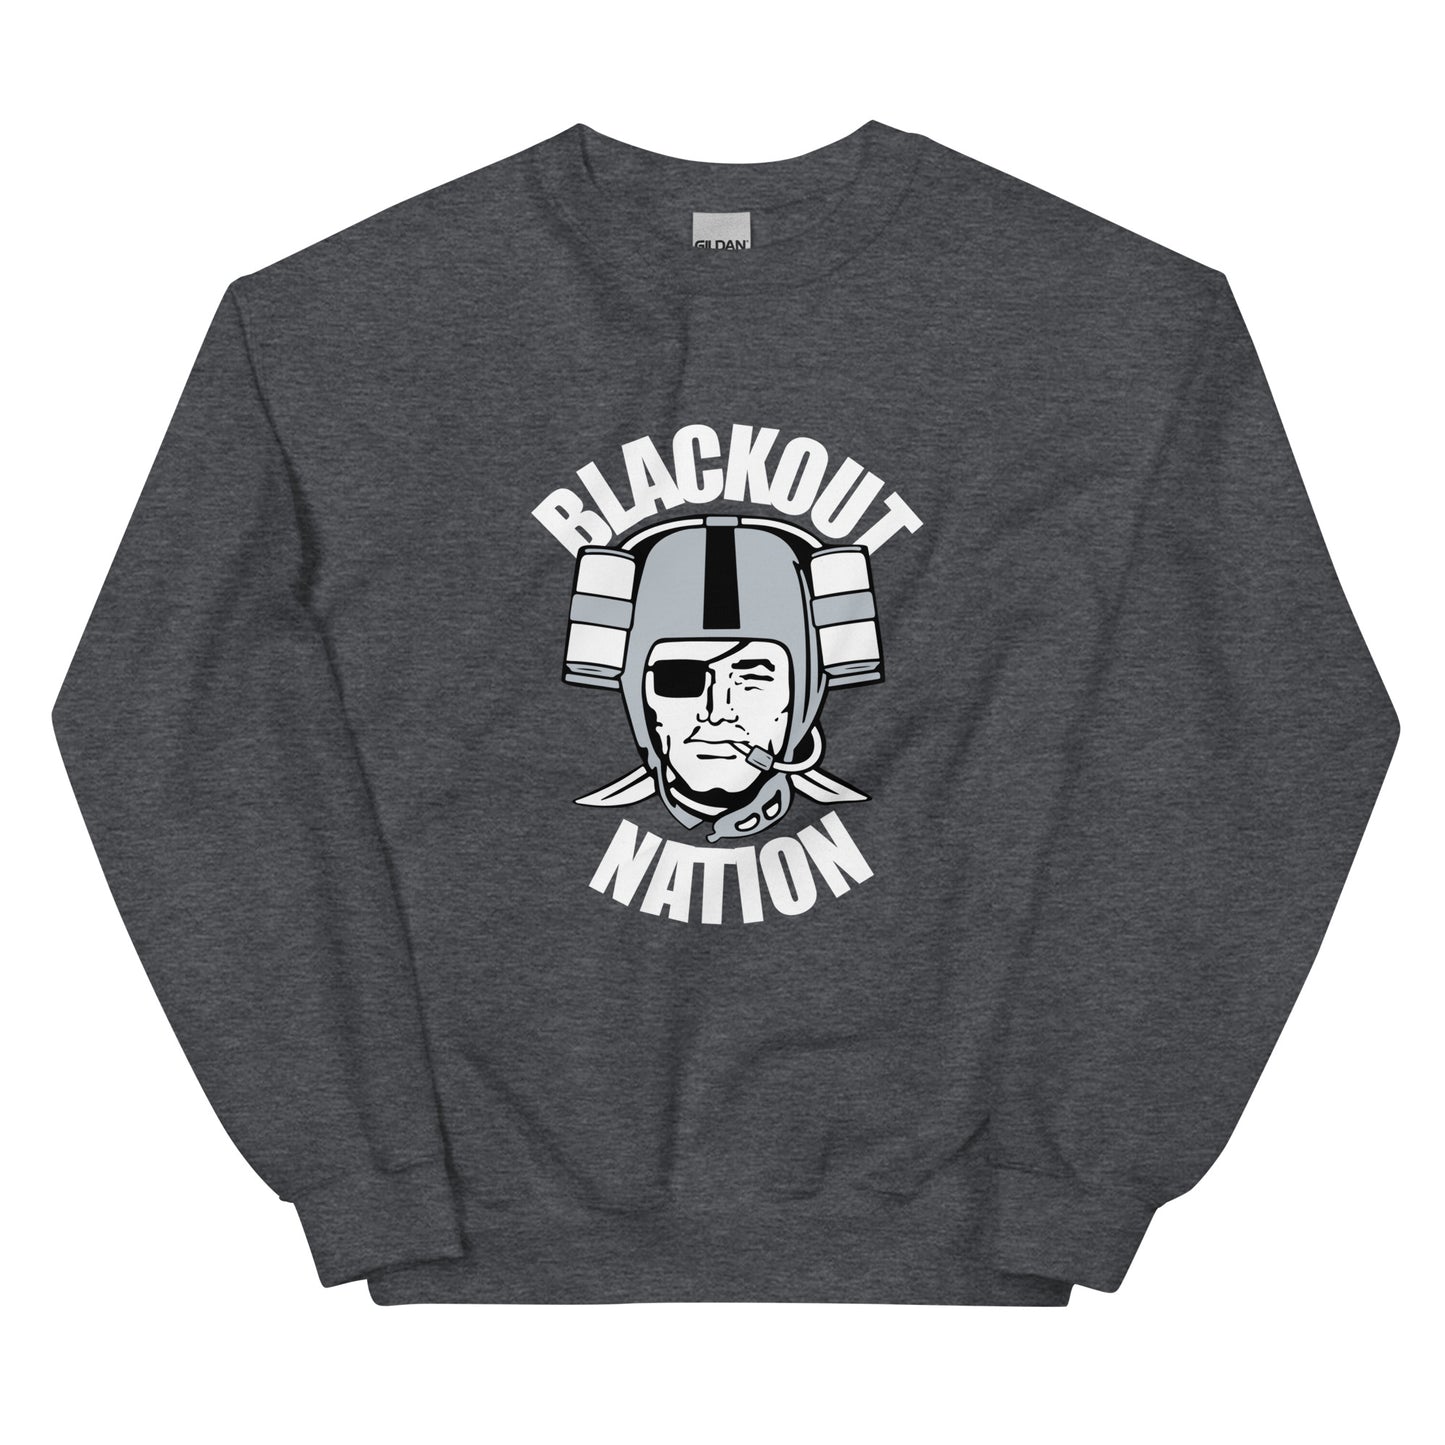 Blackout Nation II Sweatshirt